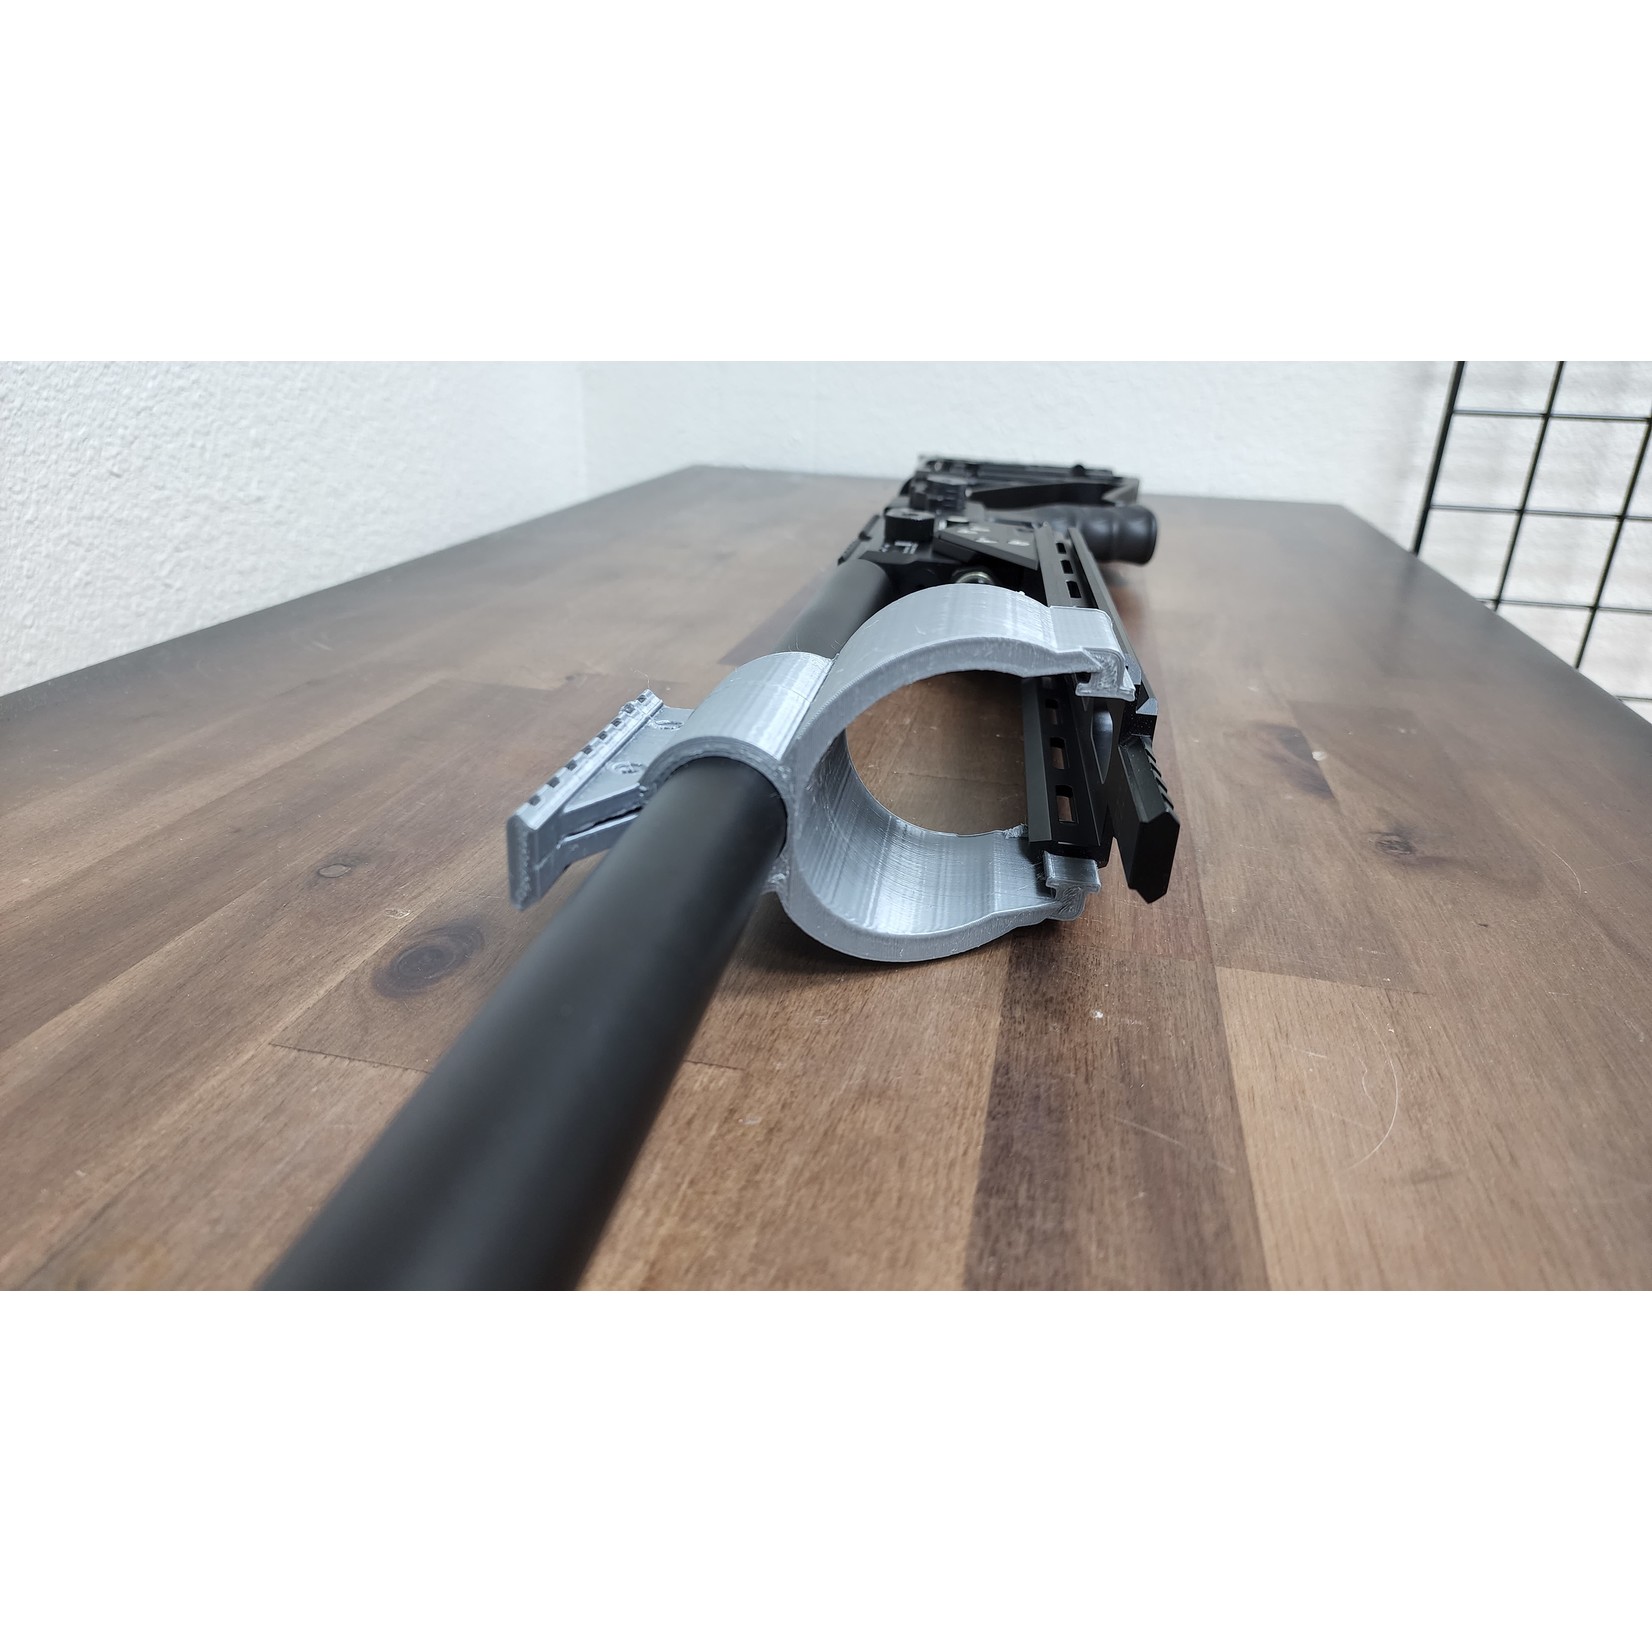 Alamo Airguns 3D Print Crown Barrel Band for Arca Rail 2